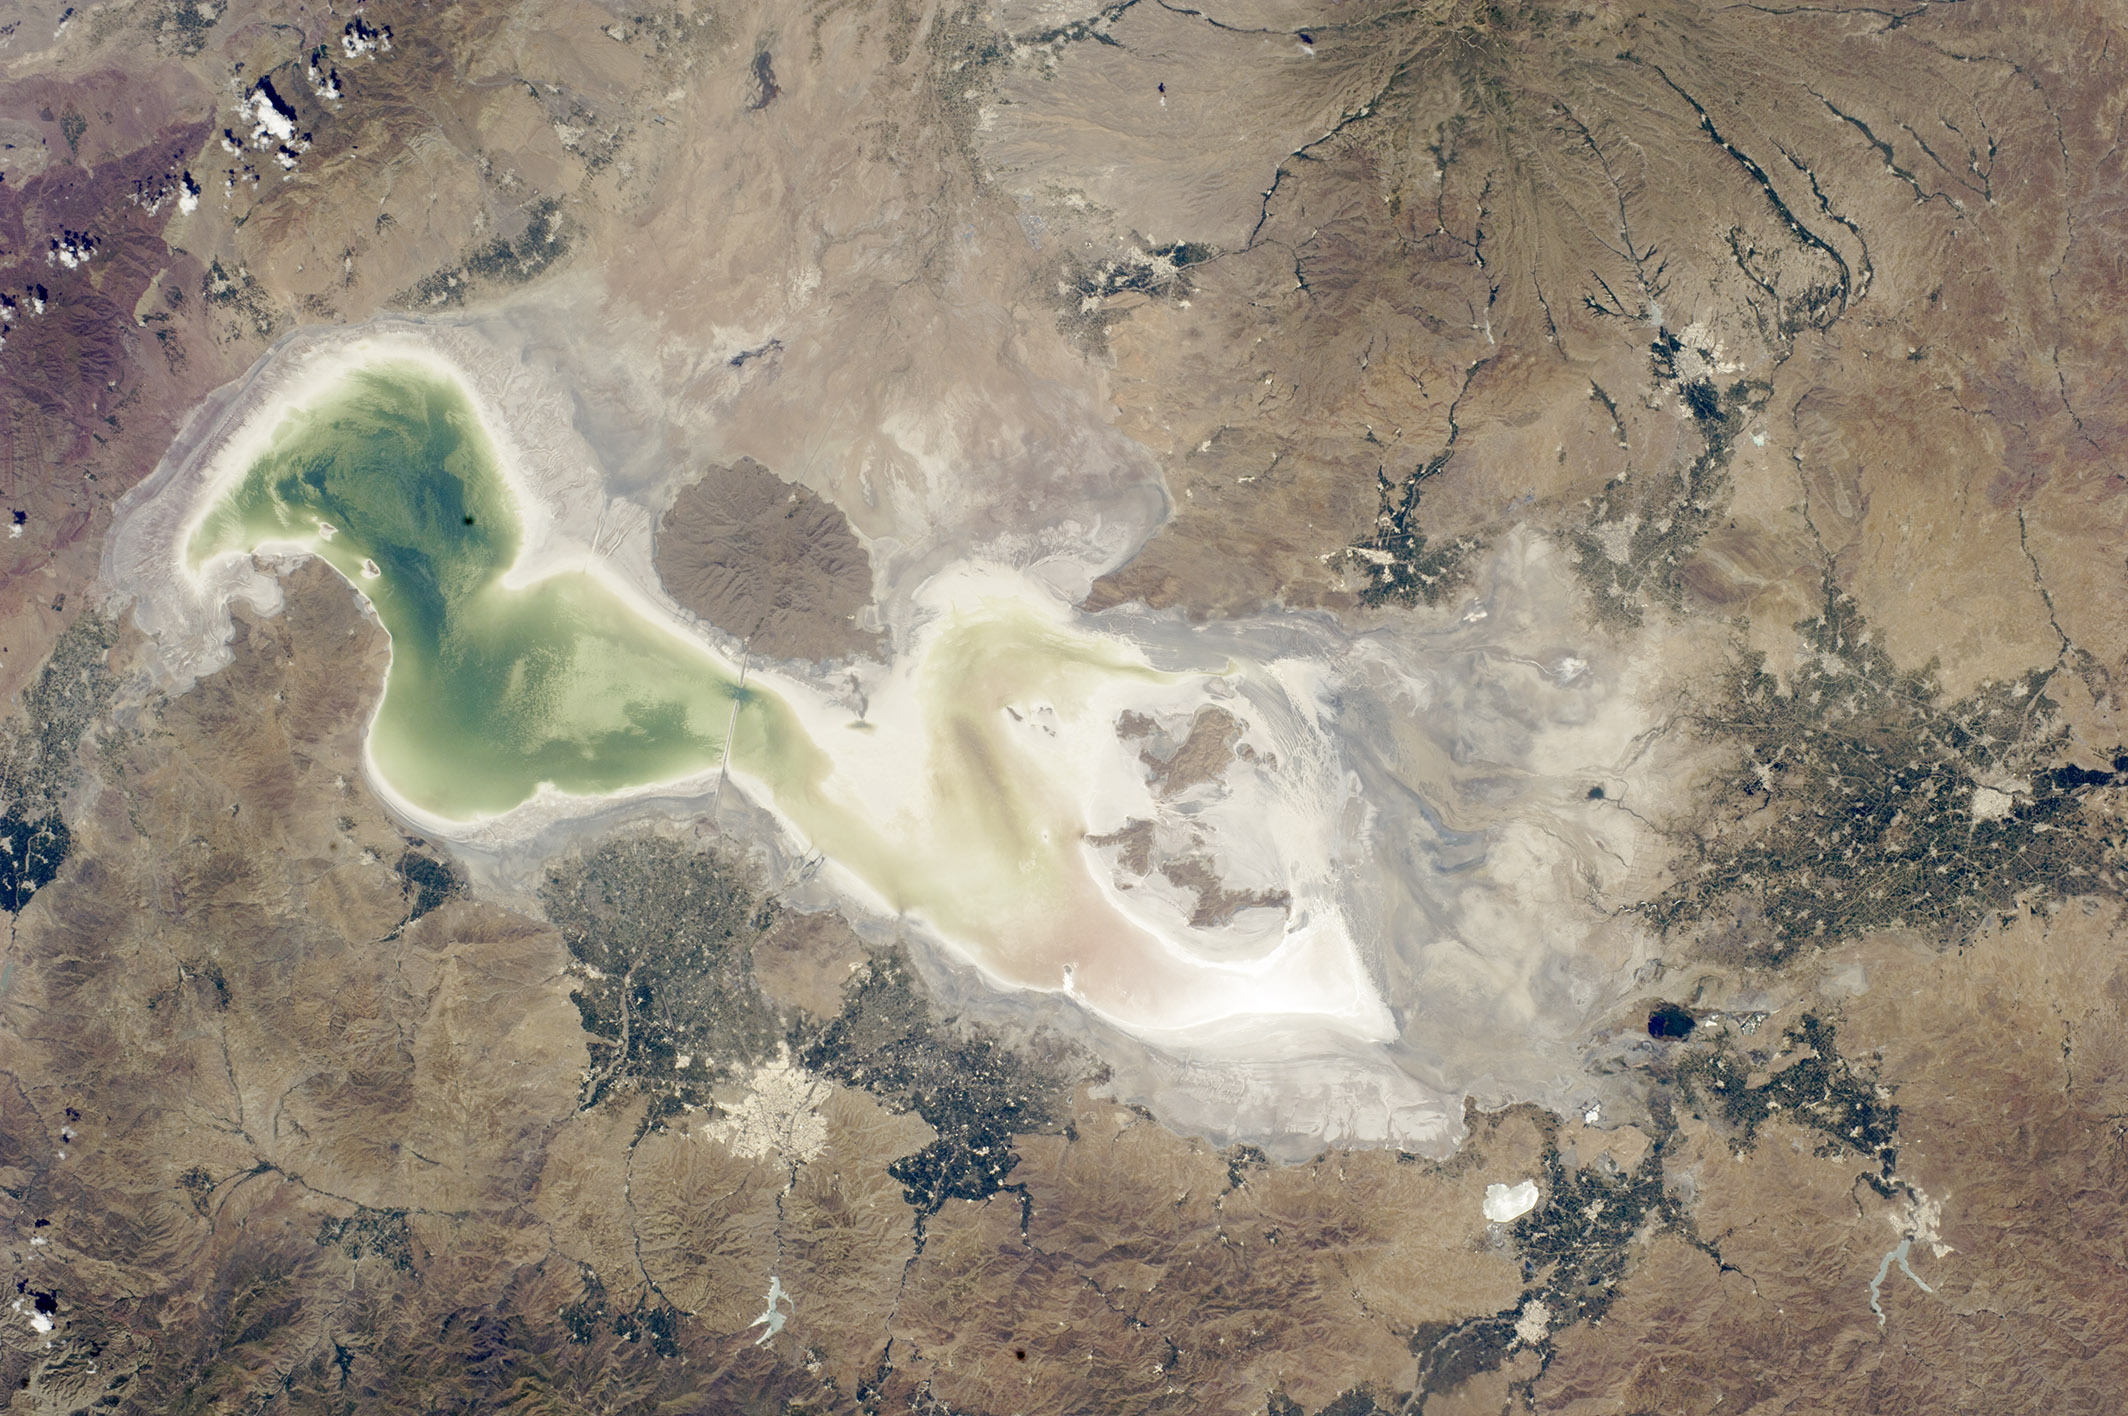 مشاهده روند نابودی دریاچه اورمیه با امکان جدید گوگل ارث